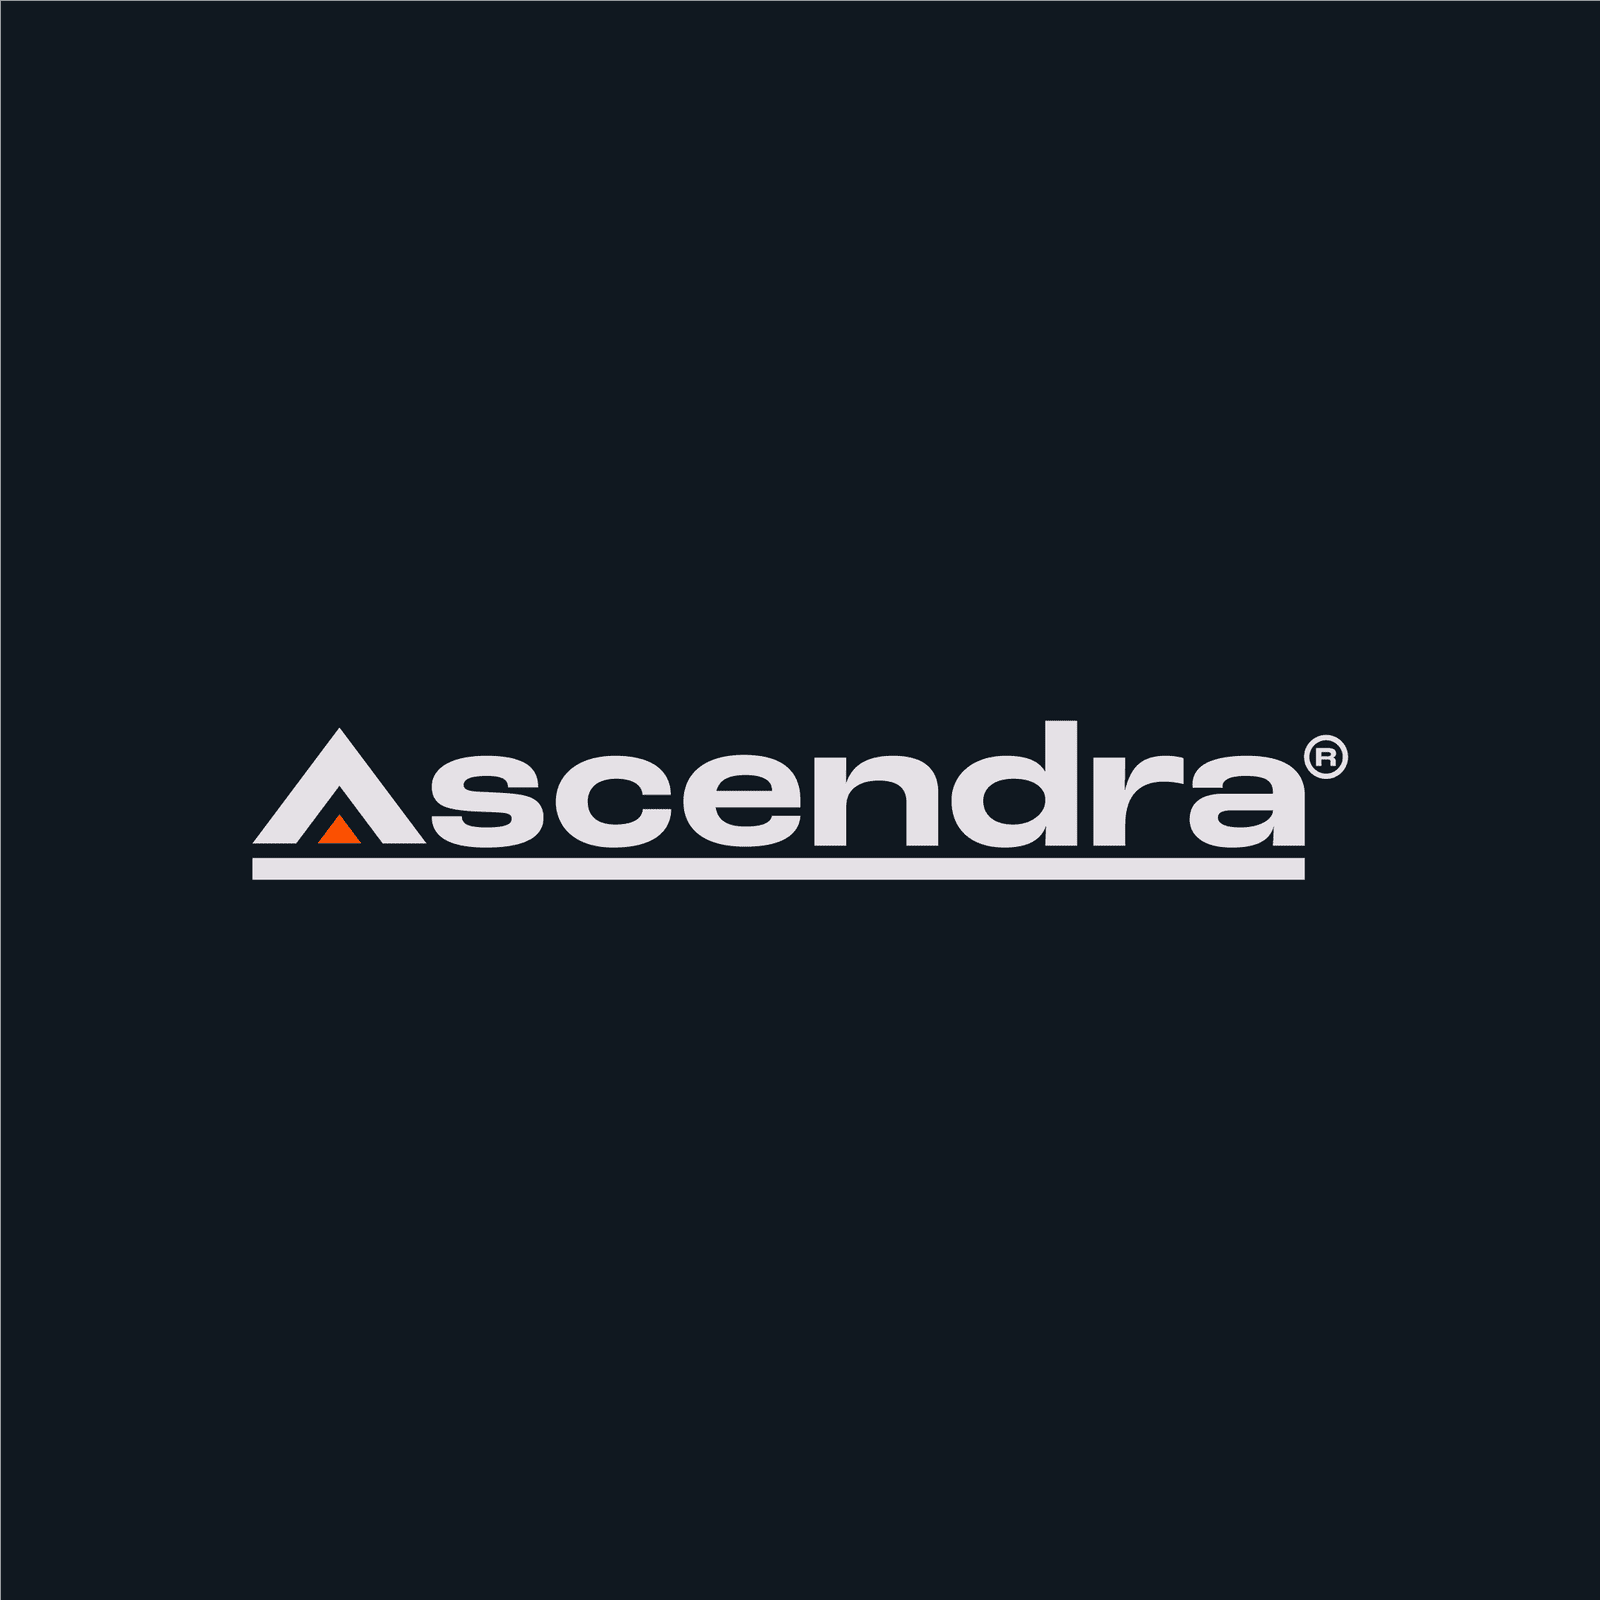 Ascendra_Profile2